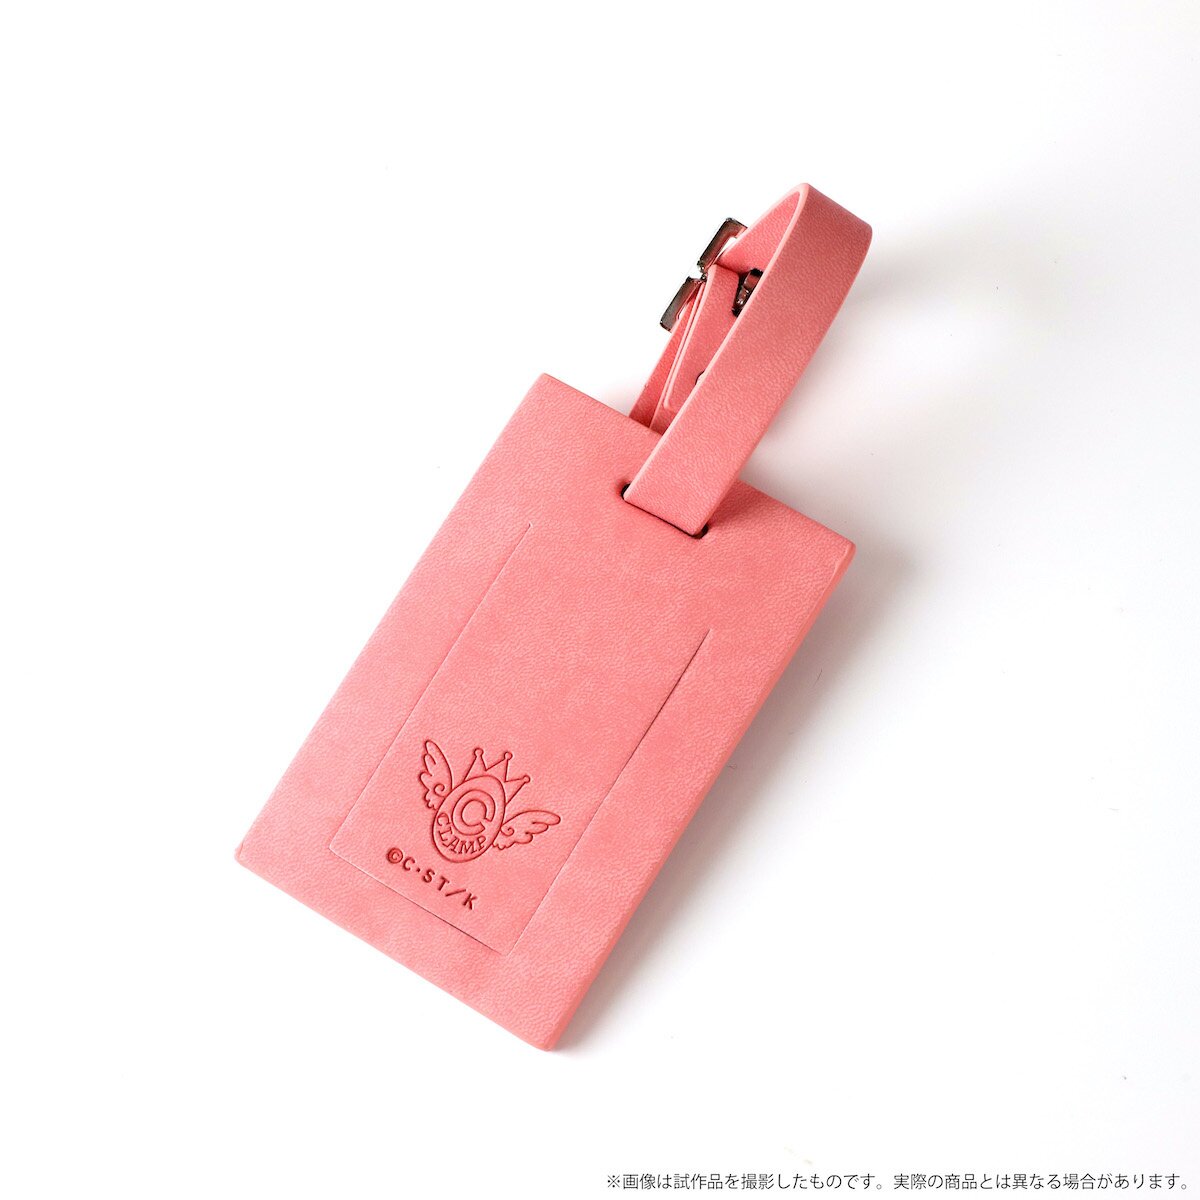  Japanese Sakura Kanji Travel Leather Luggage Tag